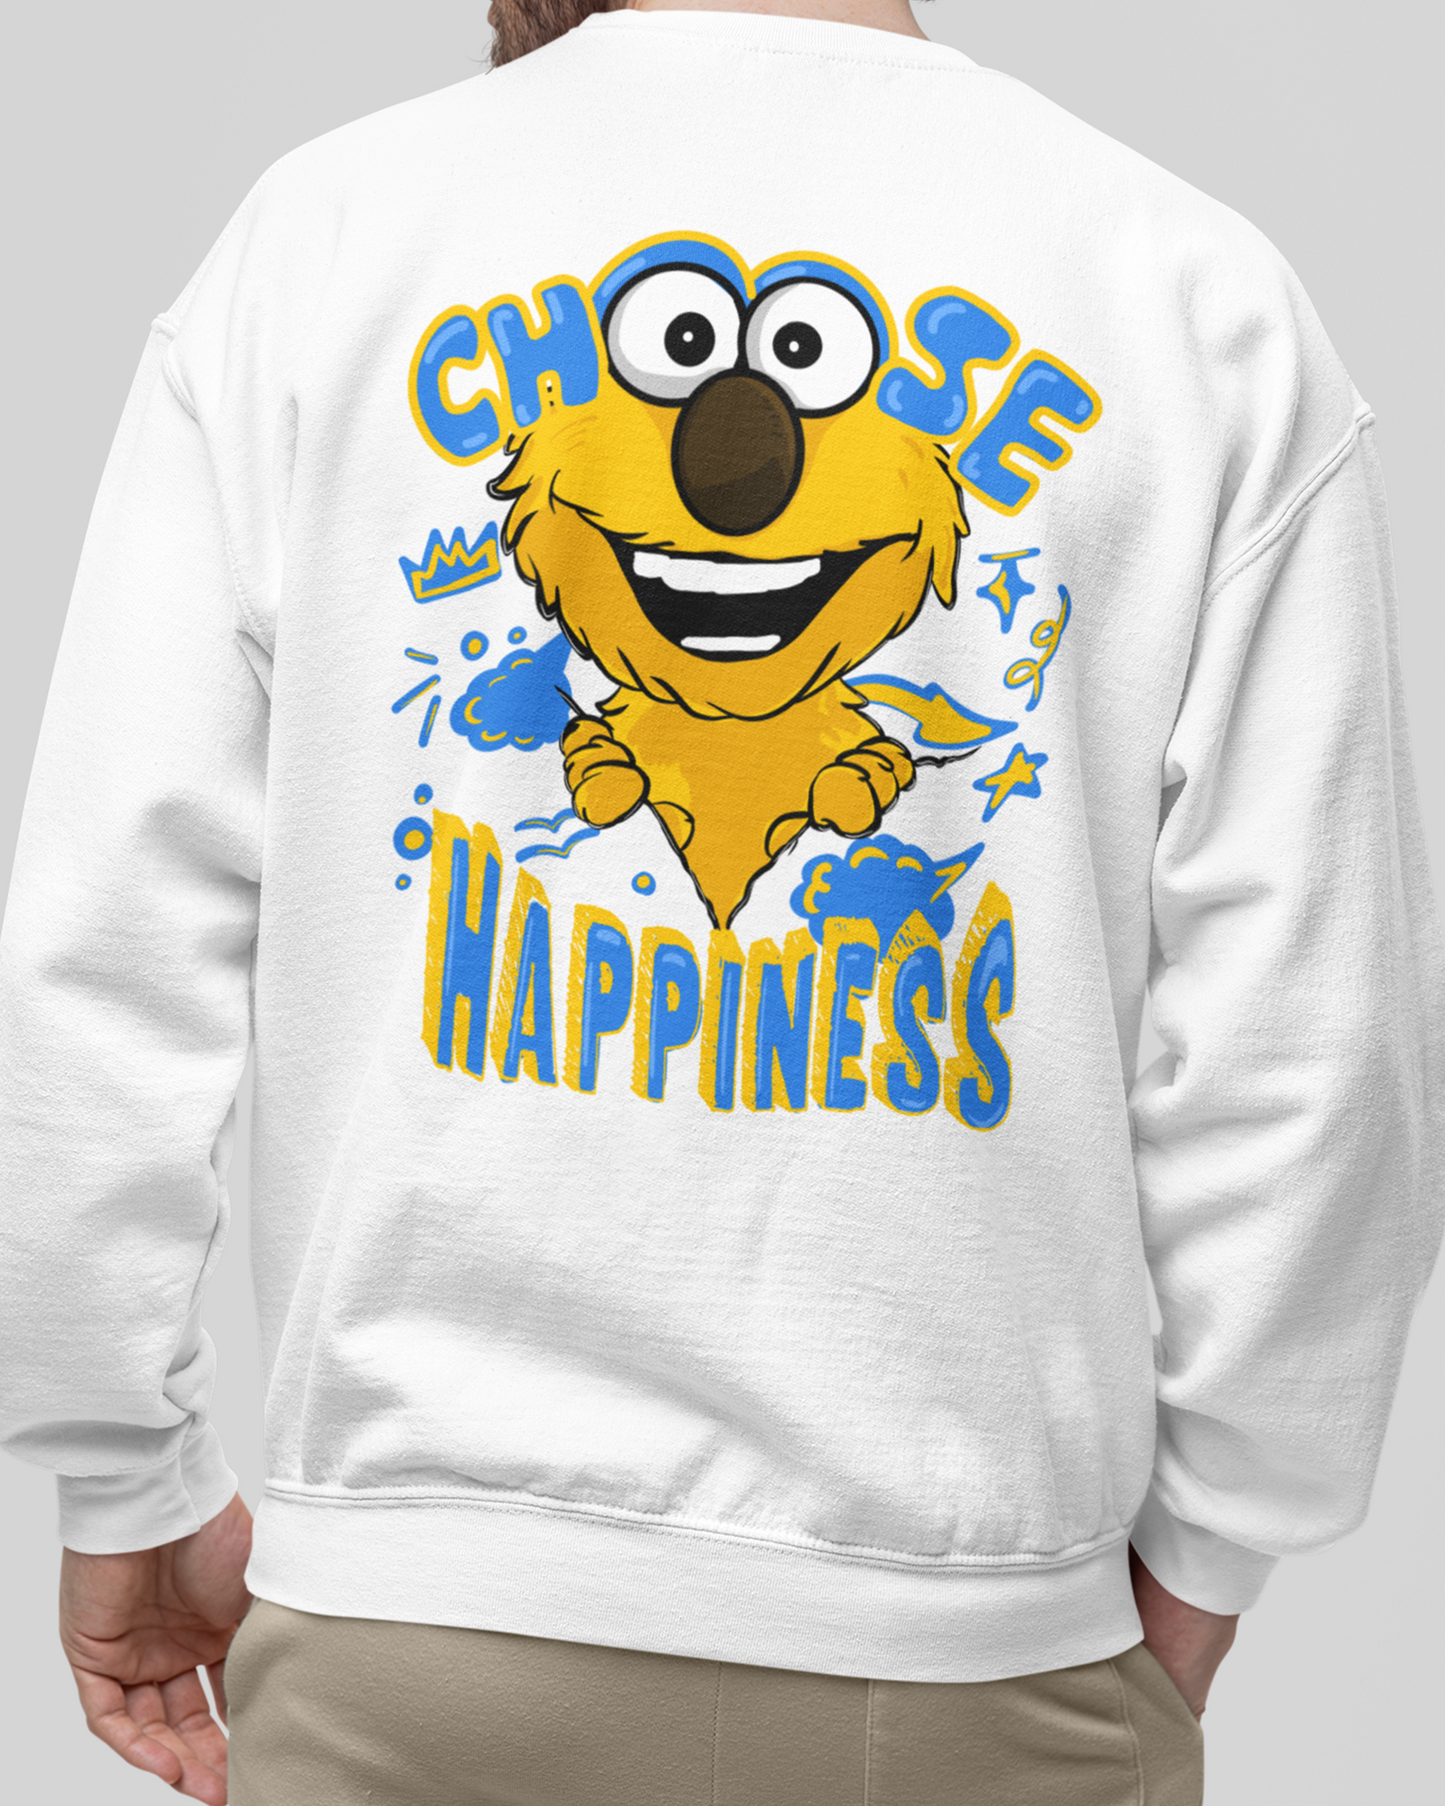 Choose Happiness Sweatshirt